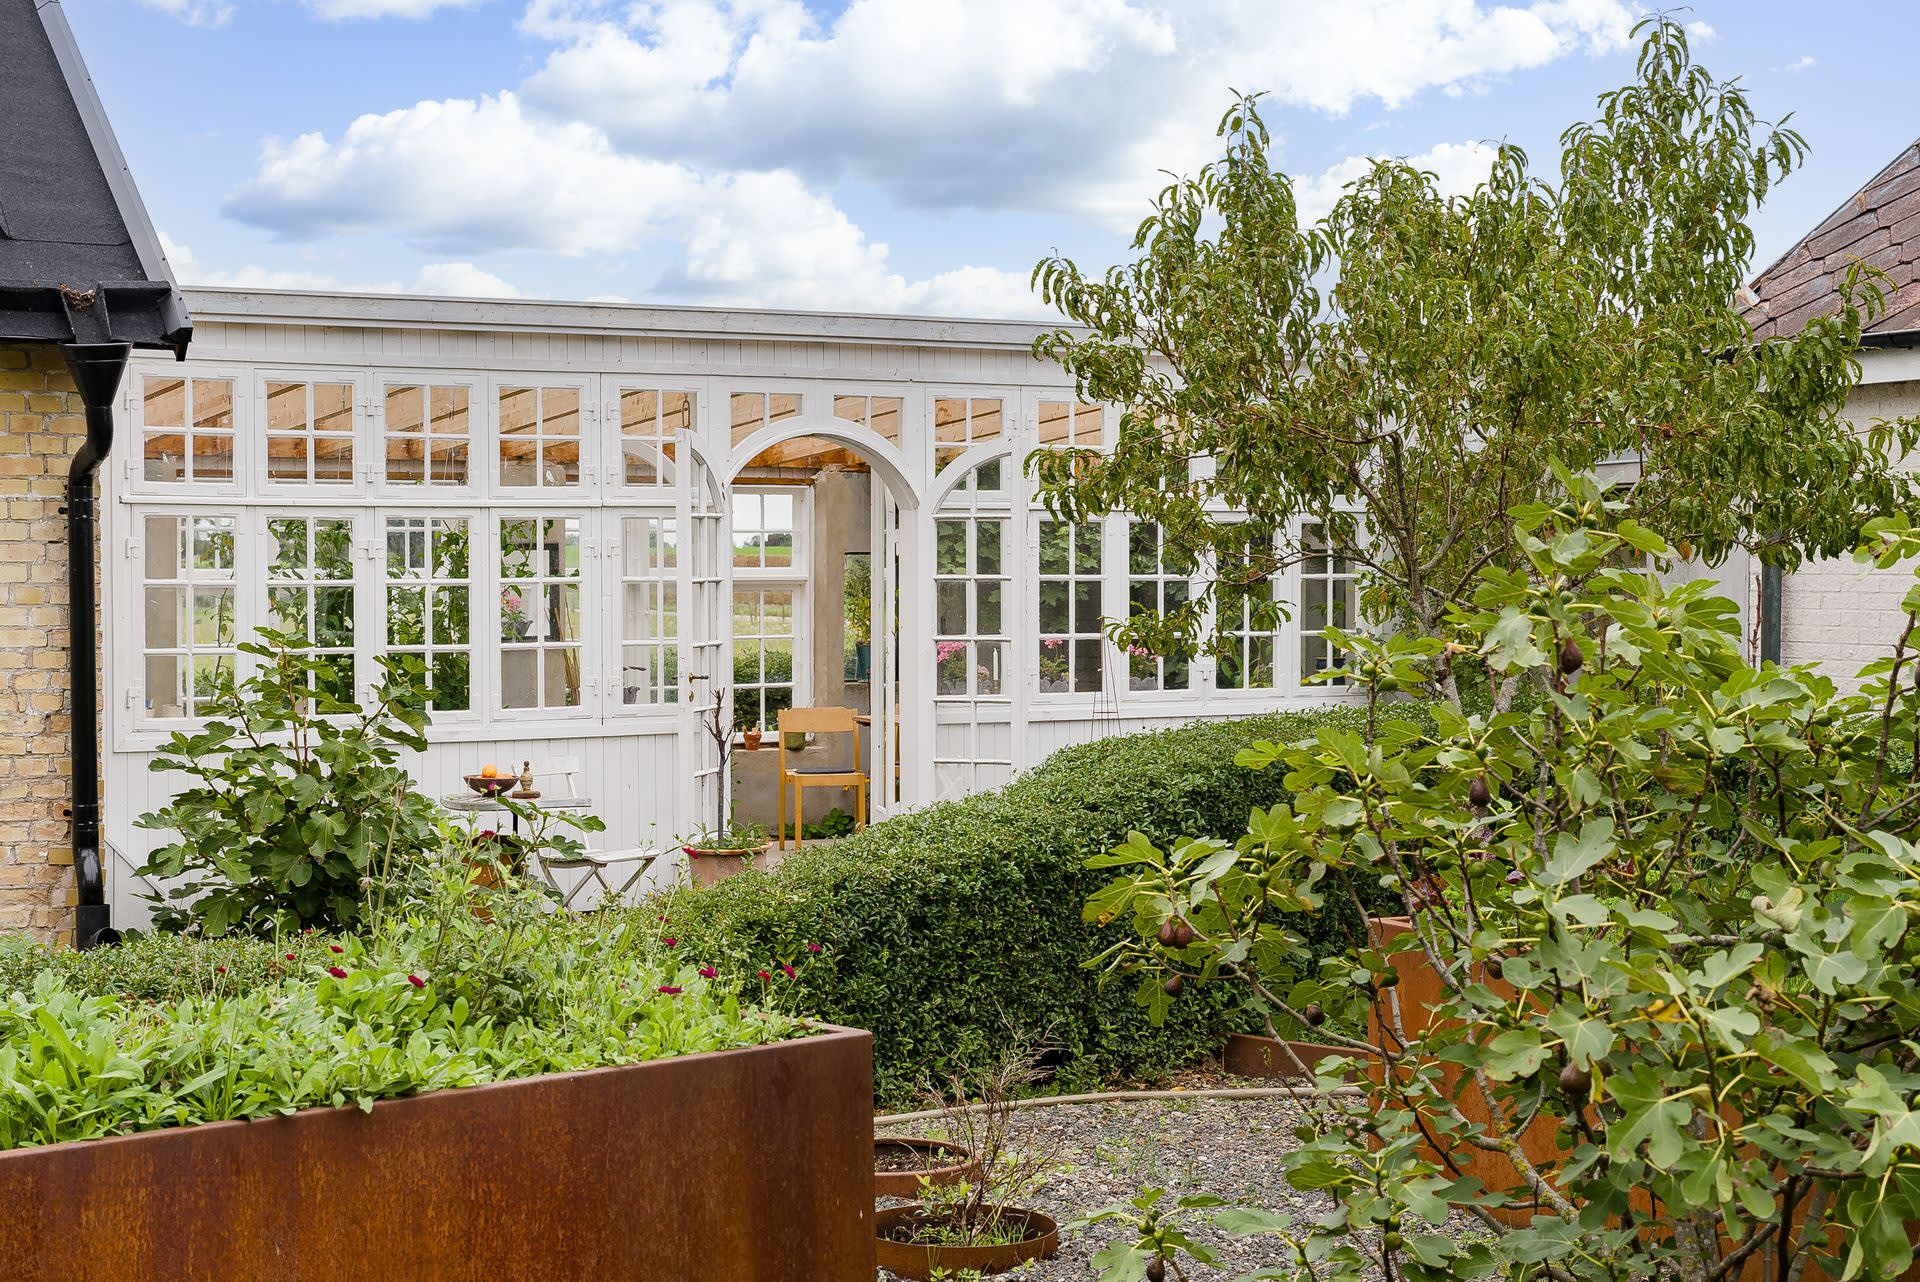 Växthus som länkar samman gården och blir ett romantiskt inslag i trädgården